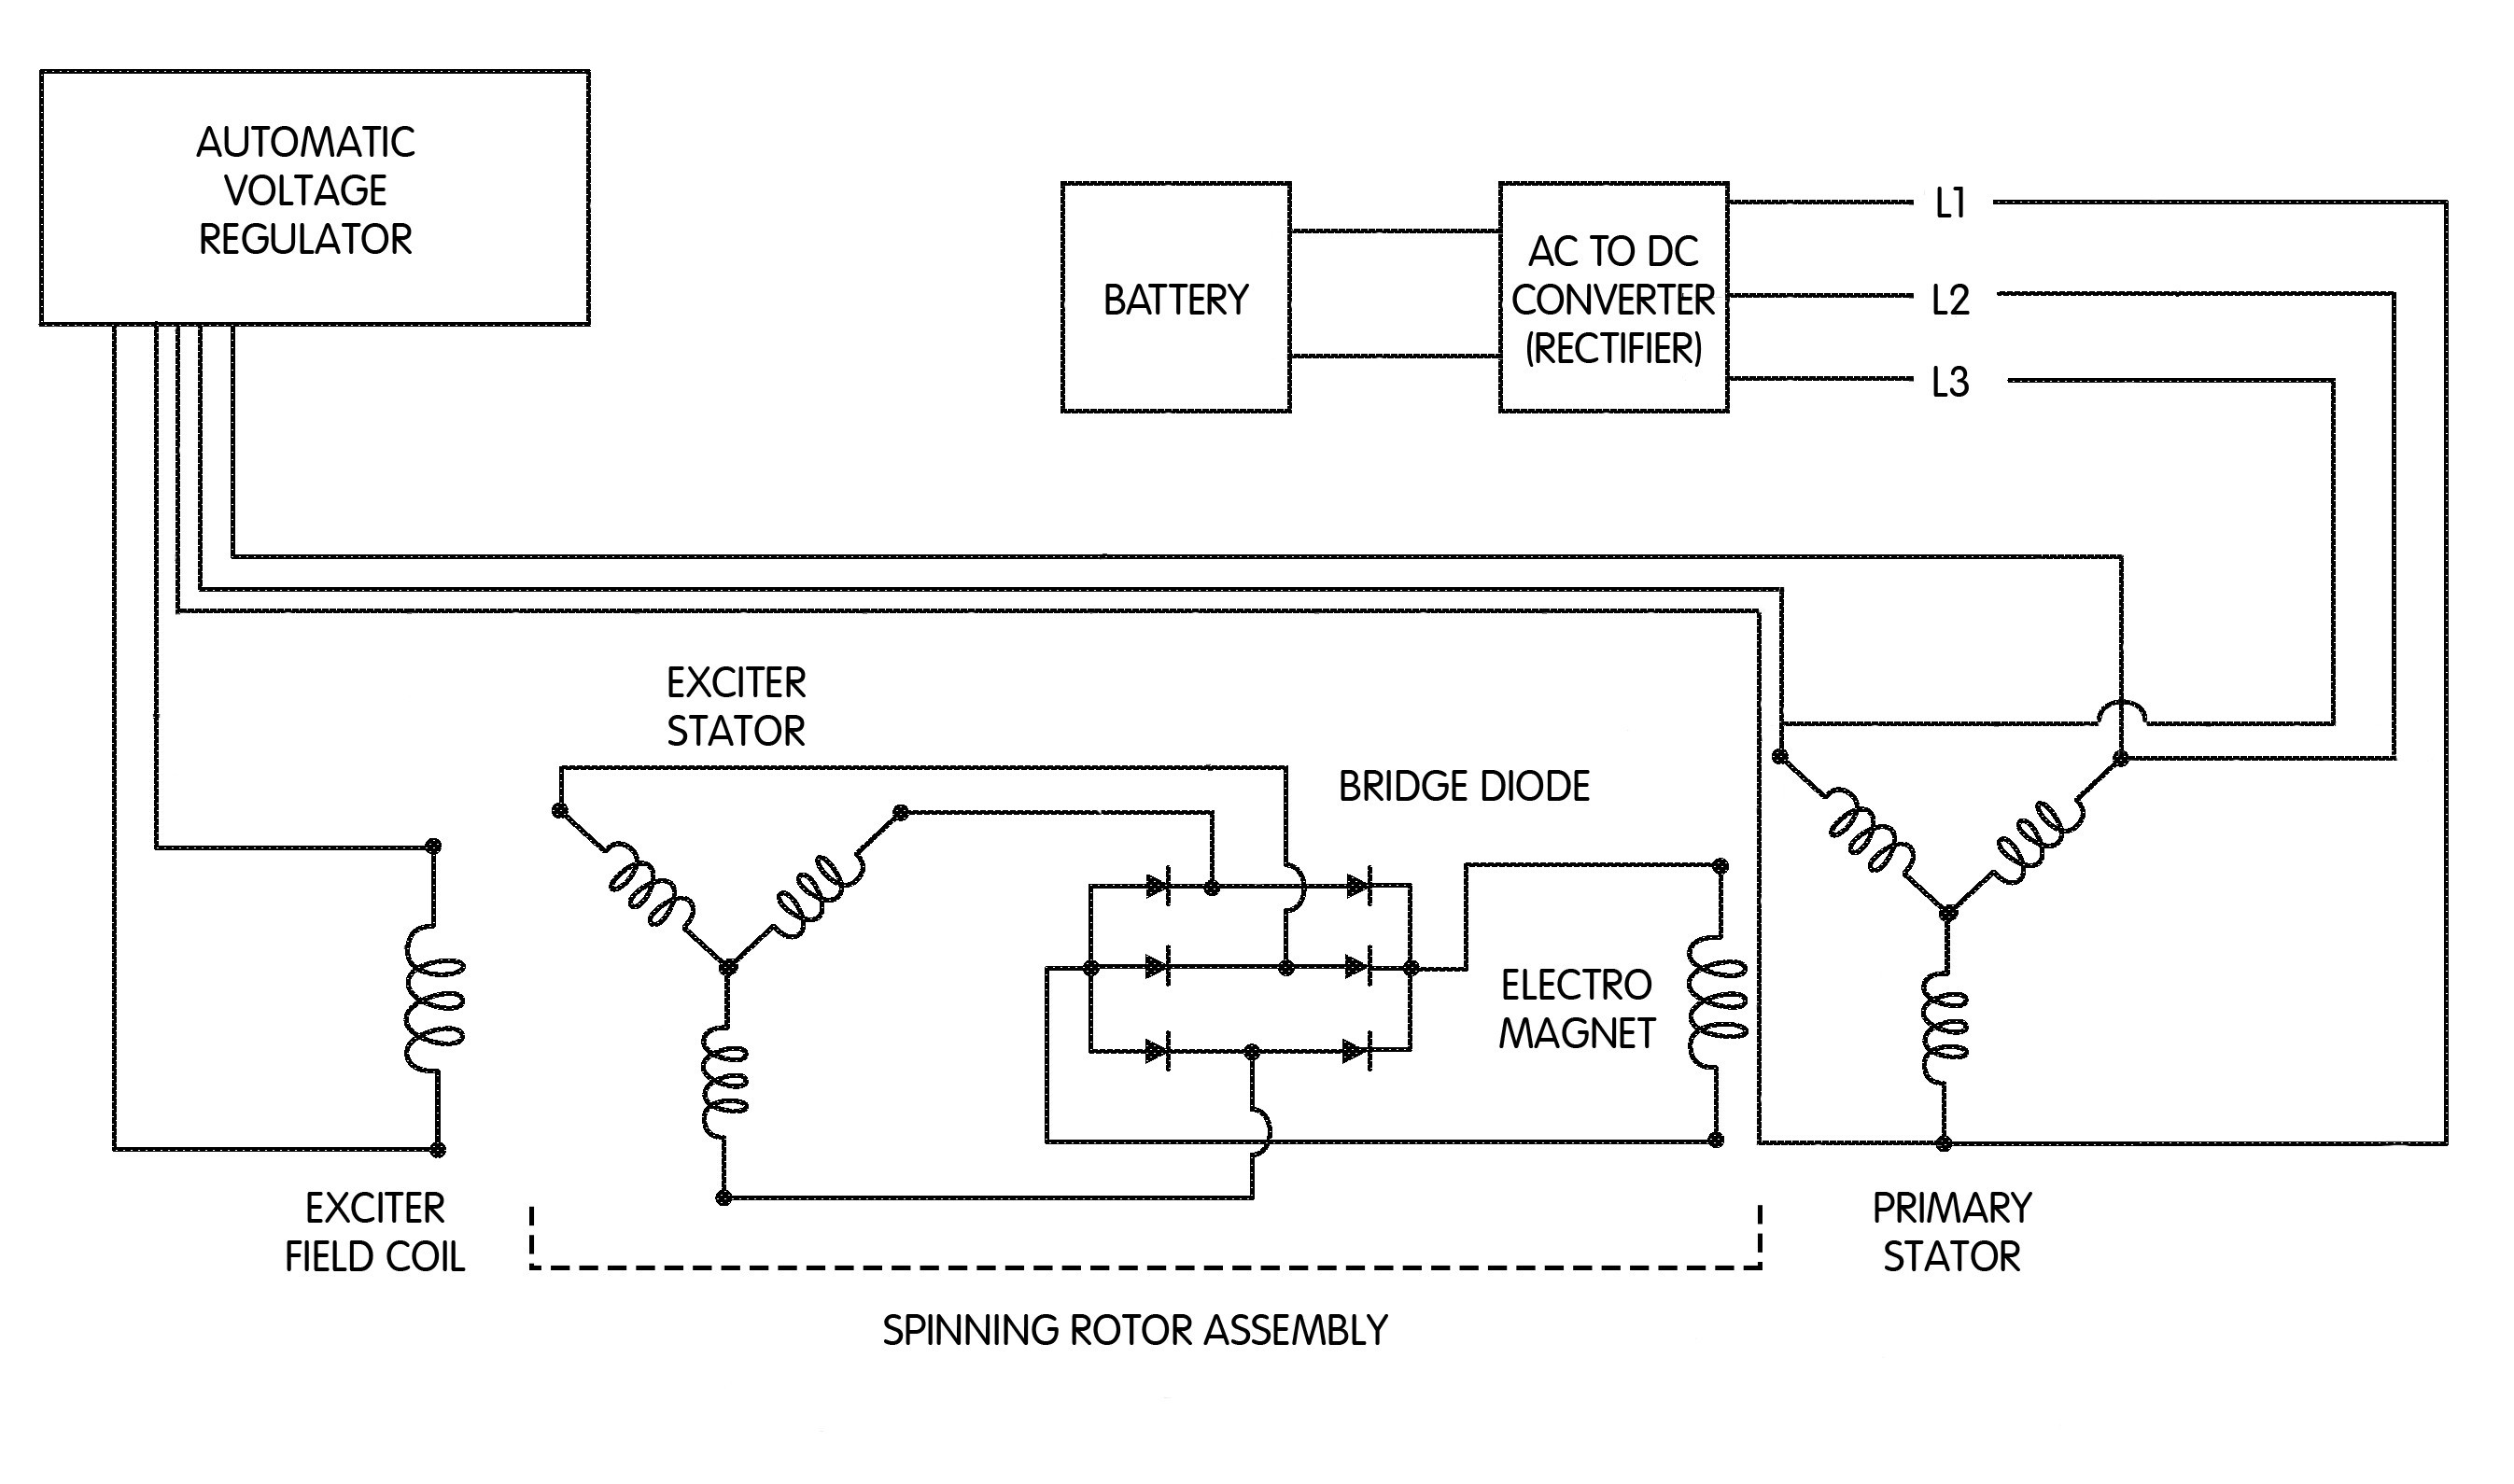 Wiring Diagram Alternator Voltage Regulator Best Lucas Voltage Regulator Wiring Diagram Dolgular Best Caterpillar Ac Alternator Wiring Diagram Wiring